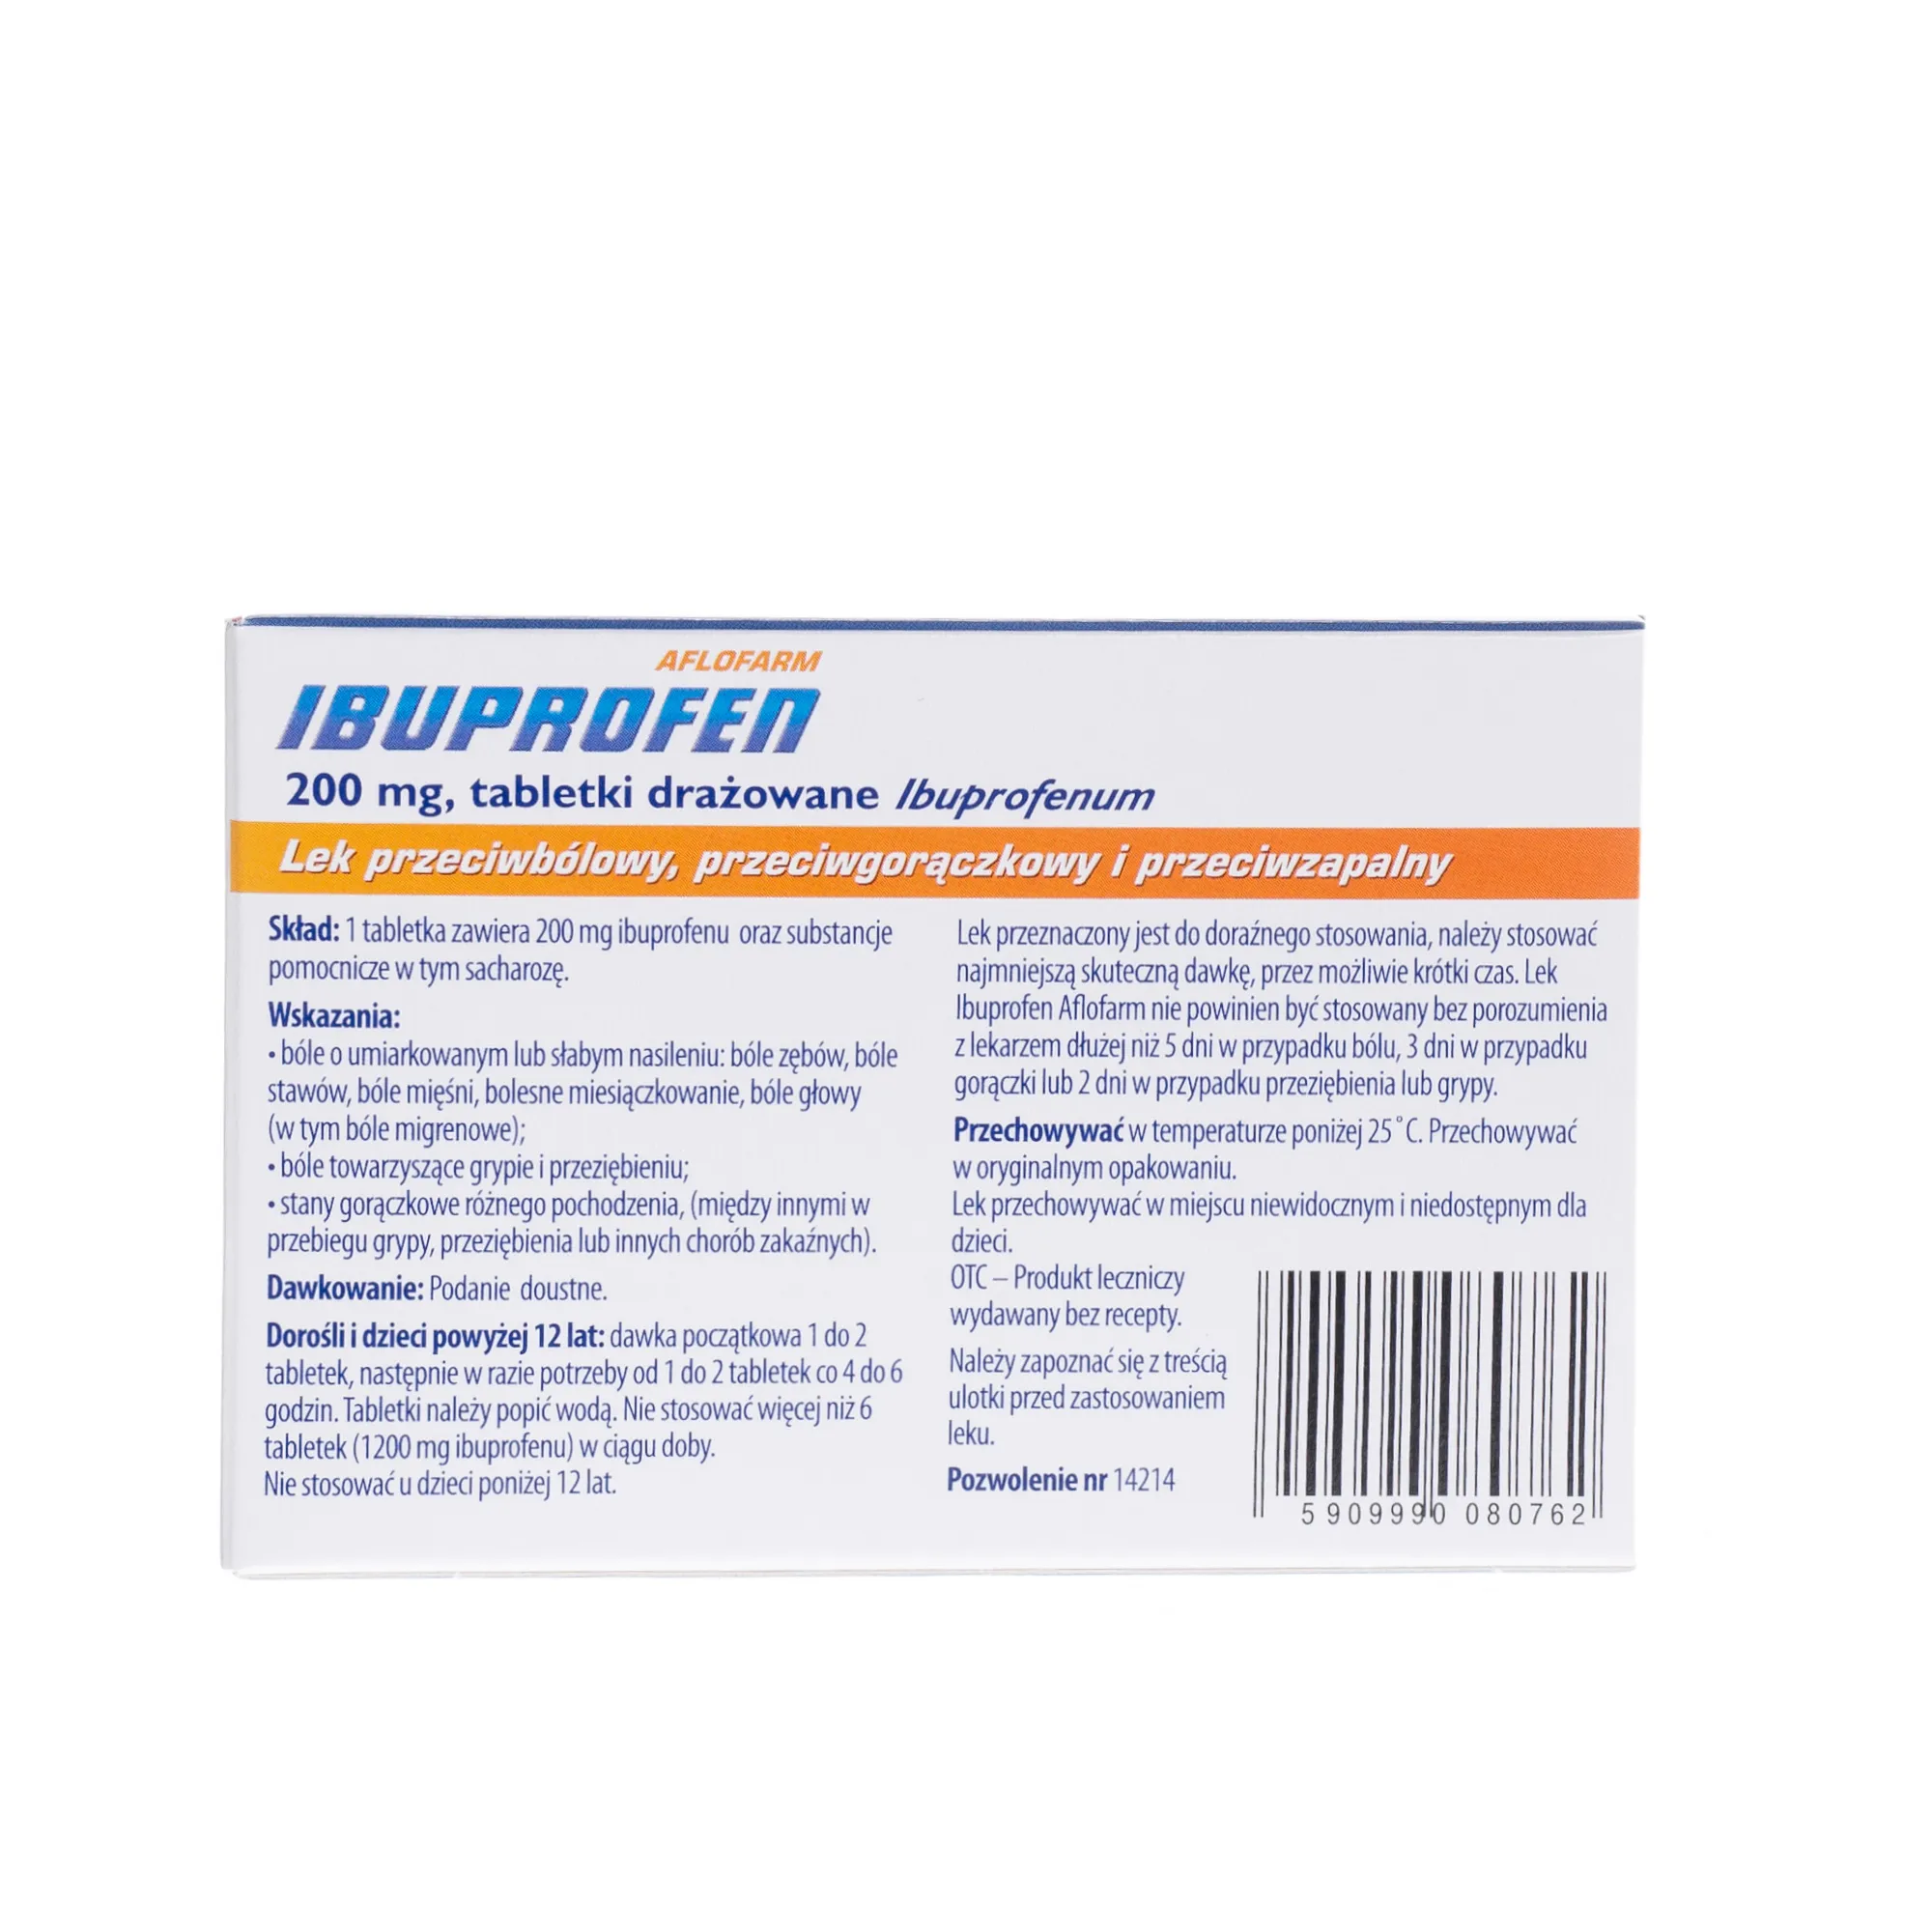 Ibuprofen Aflofarm  200 mg, 20 tabletek drażowanych 